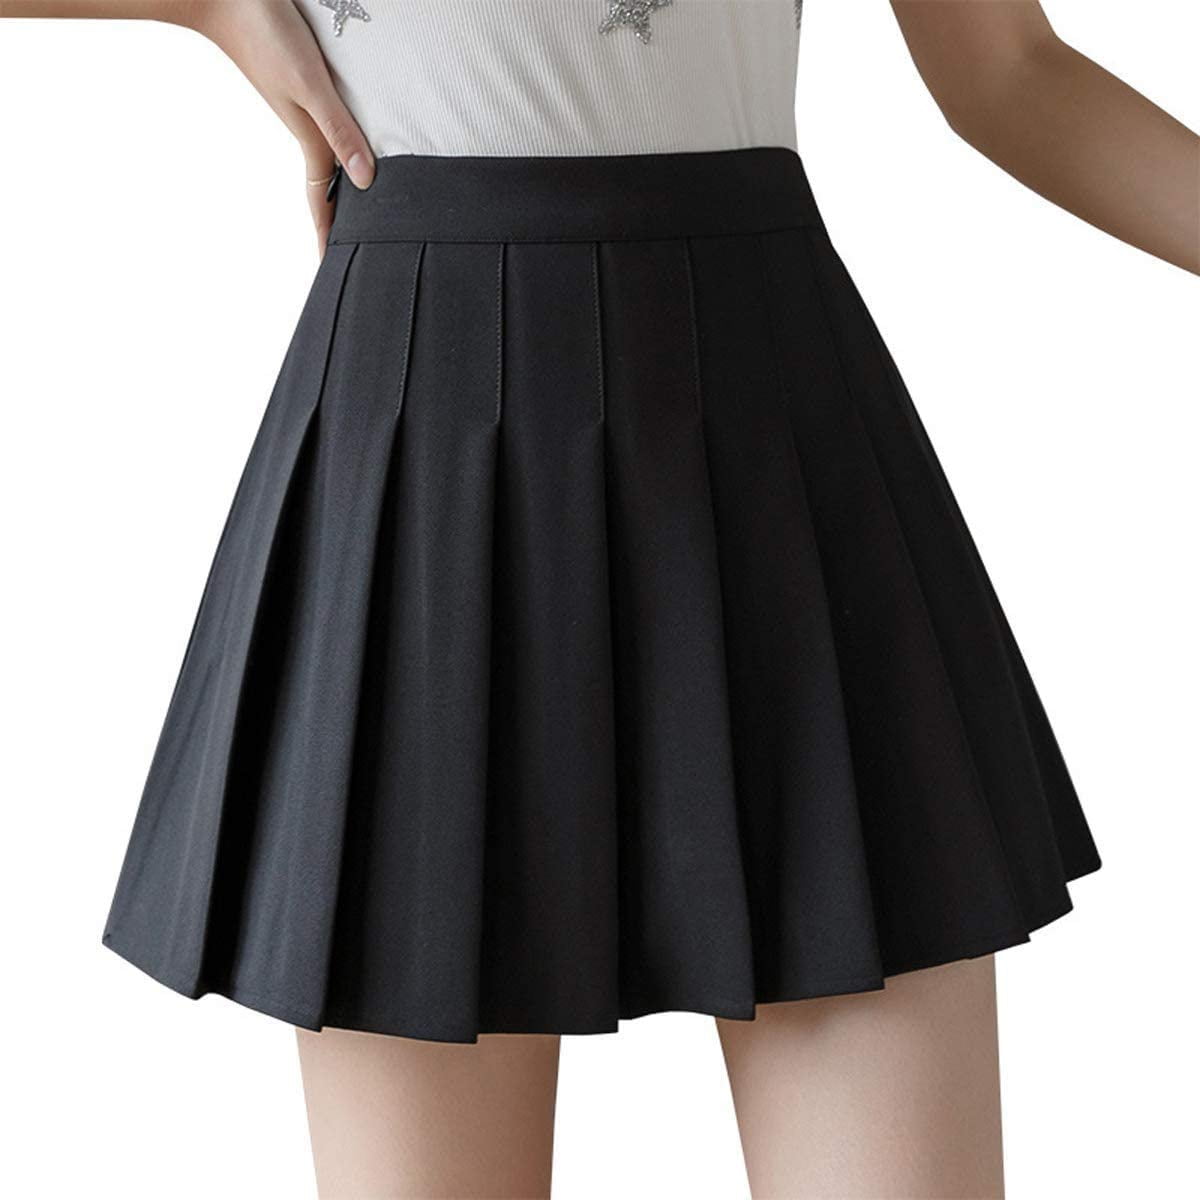 Girls Women High Waisted Plain Pleated Skirt Skater Tennis School Uniforms A-line Mini Skirt Lining Shorts 